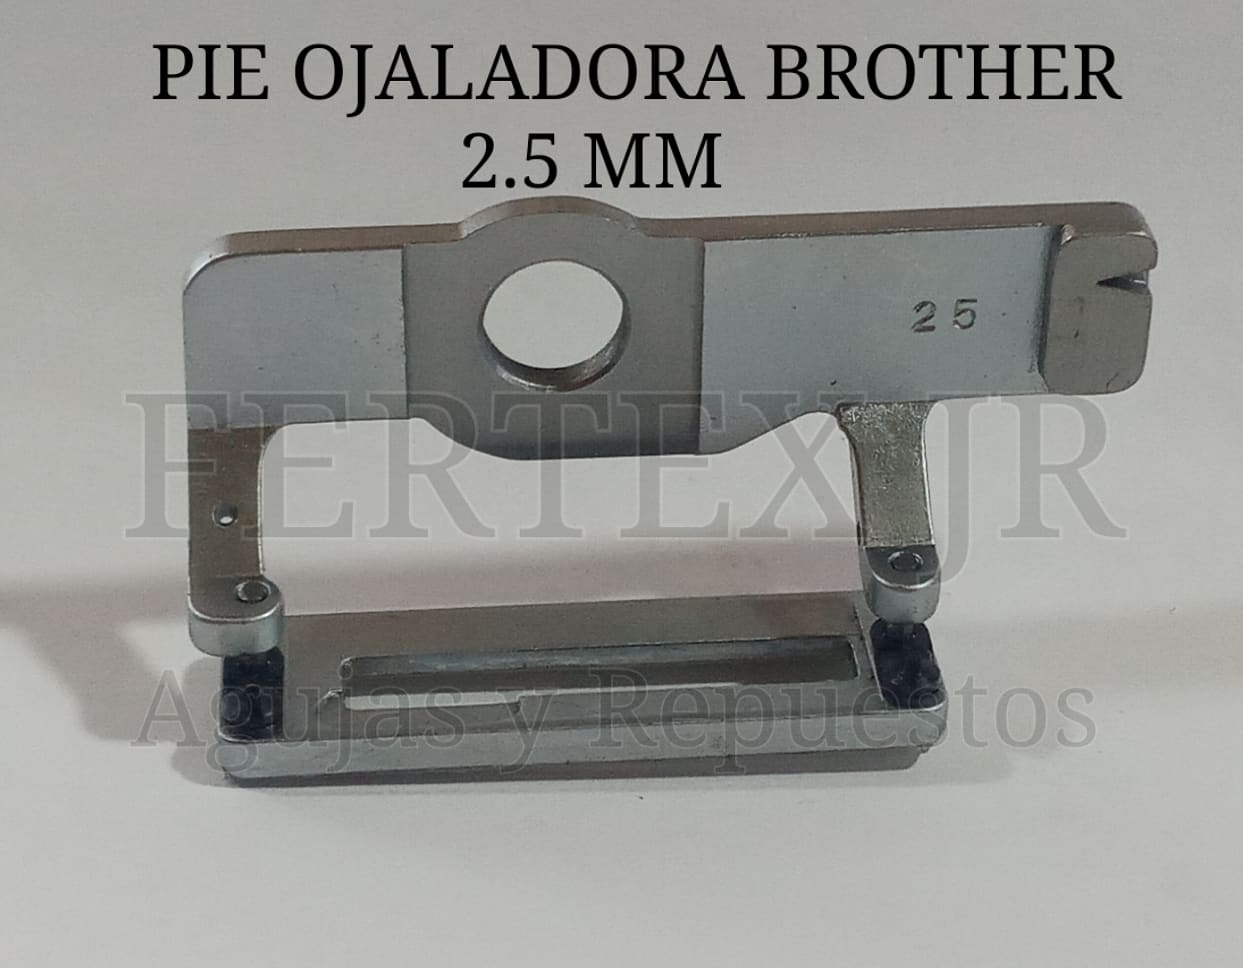 Pie Ojaladora Brother 2.5 MM